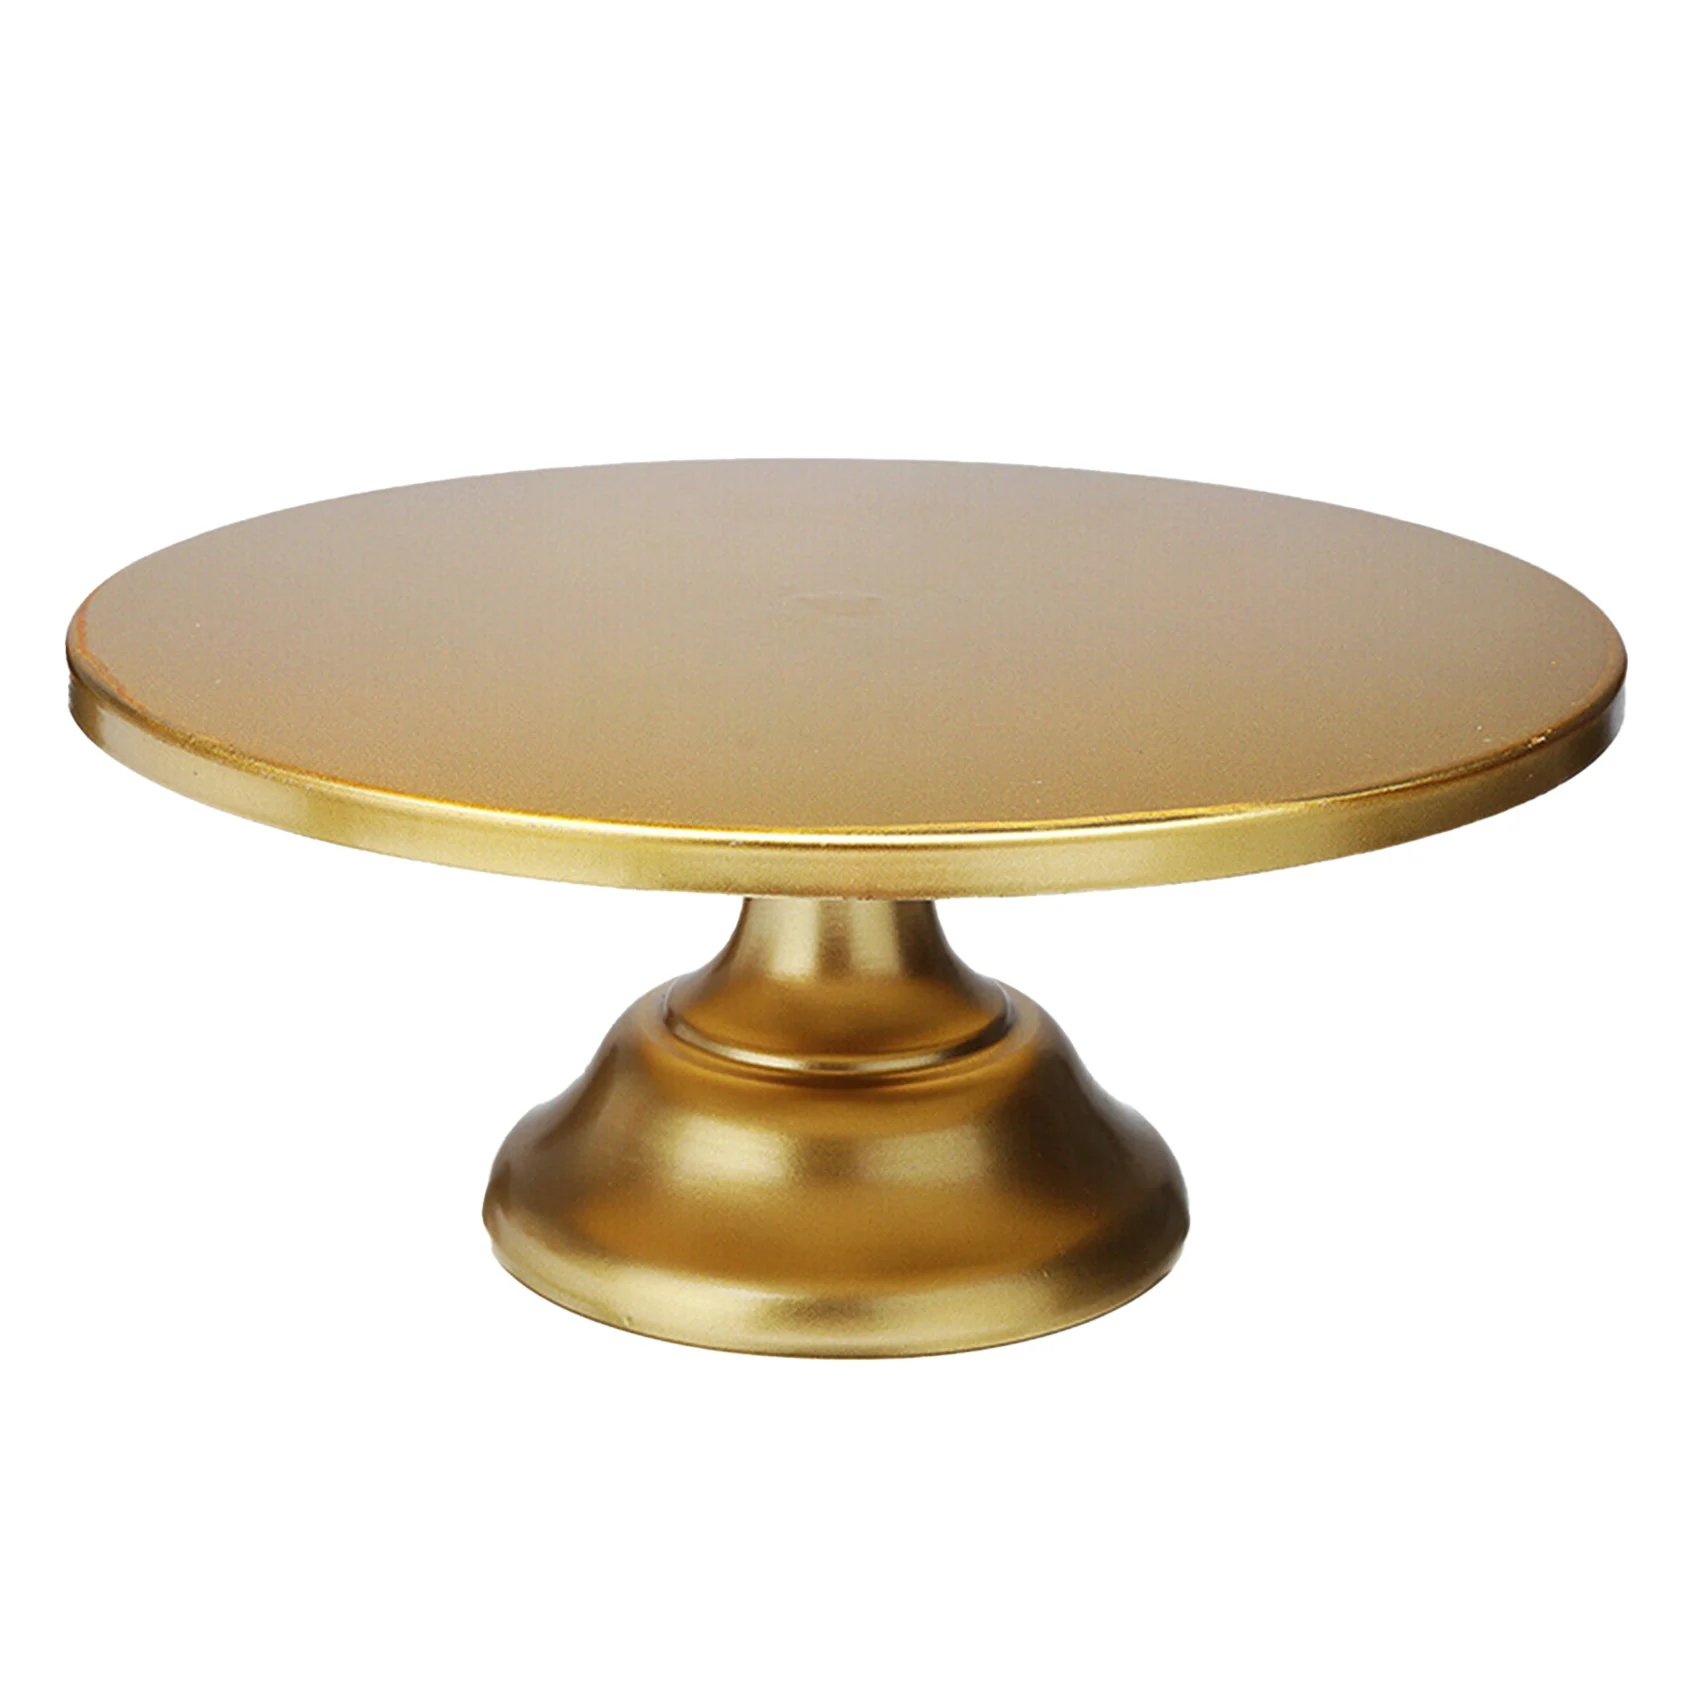 

12 Inch Iron Round Cake Stand Cake Plate Pedestal Dessert Holder Wedding Birthday Party-Gold